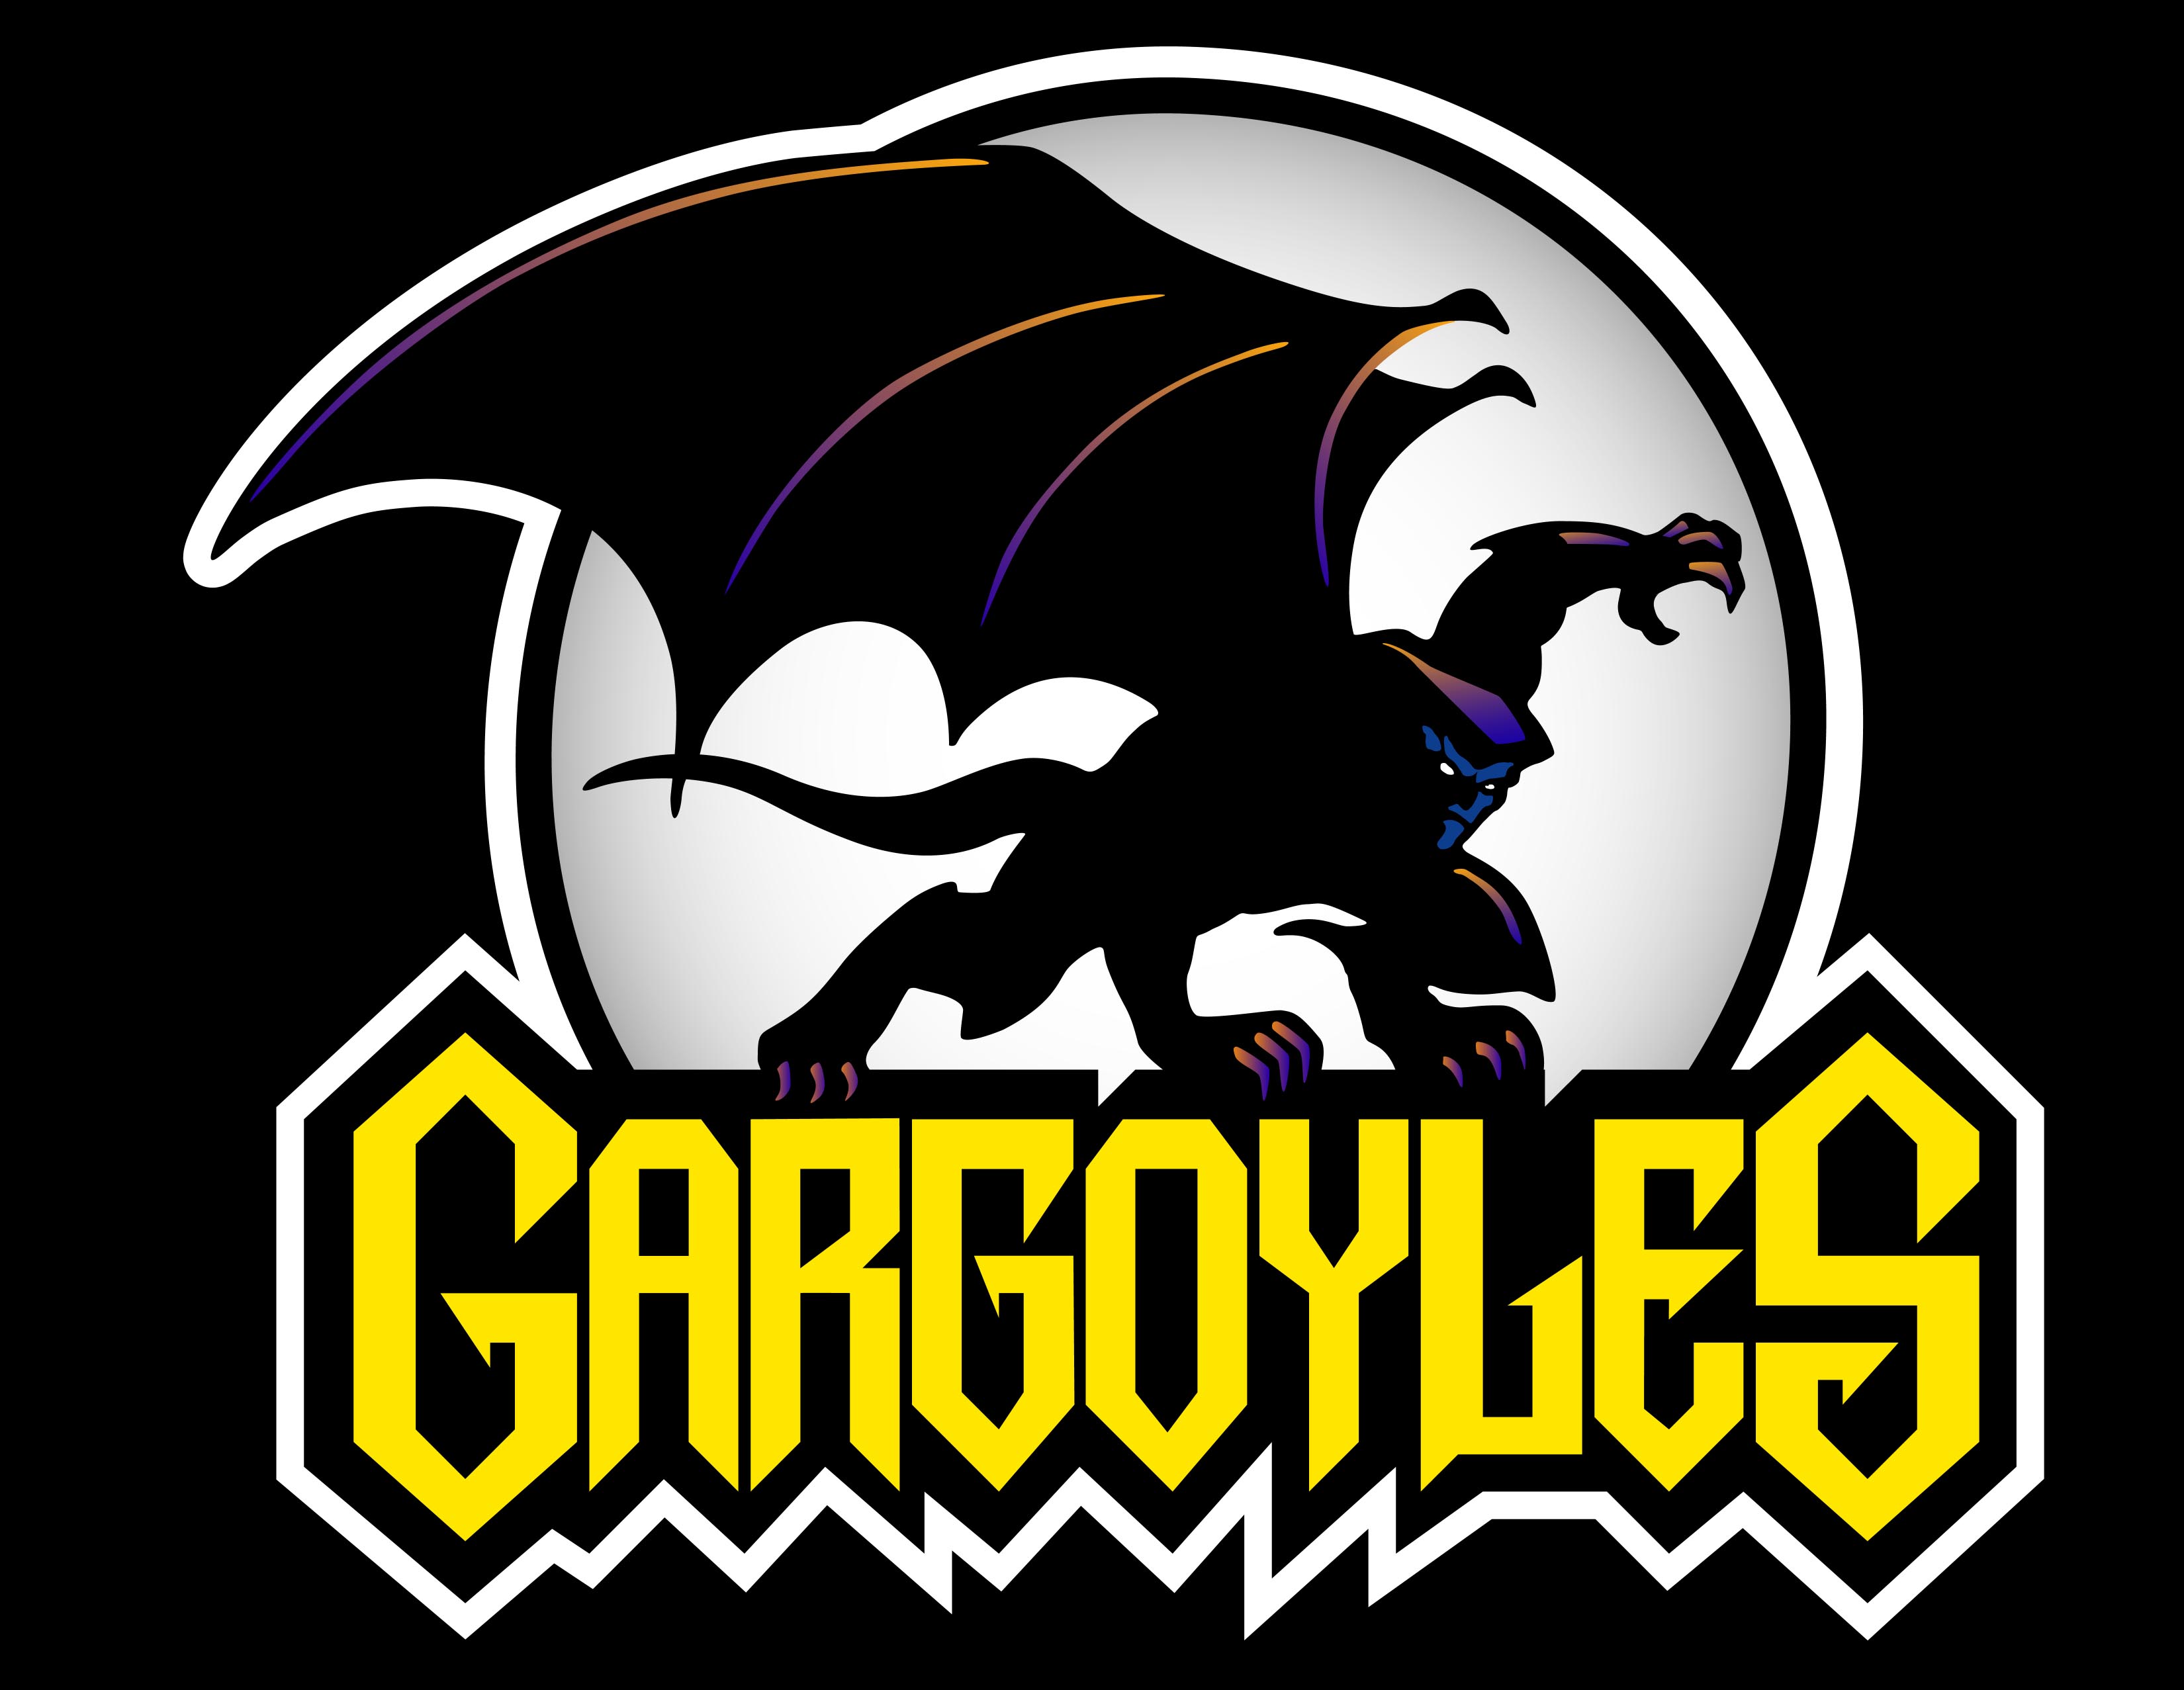 Gargoyles_logo_color_1024.jpg